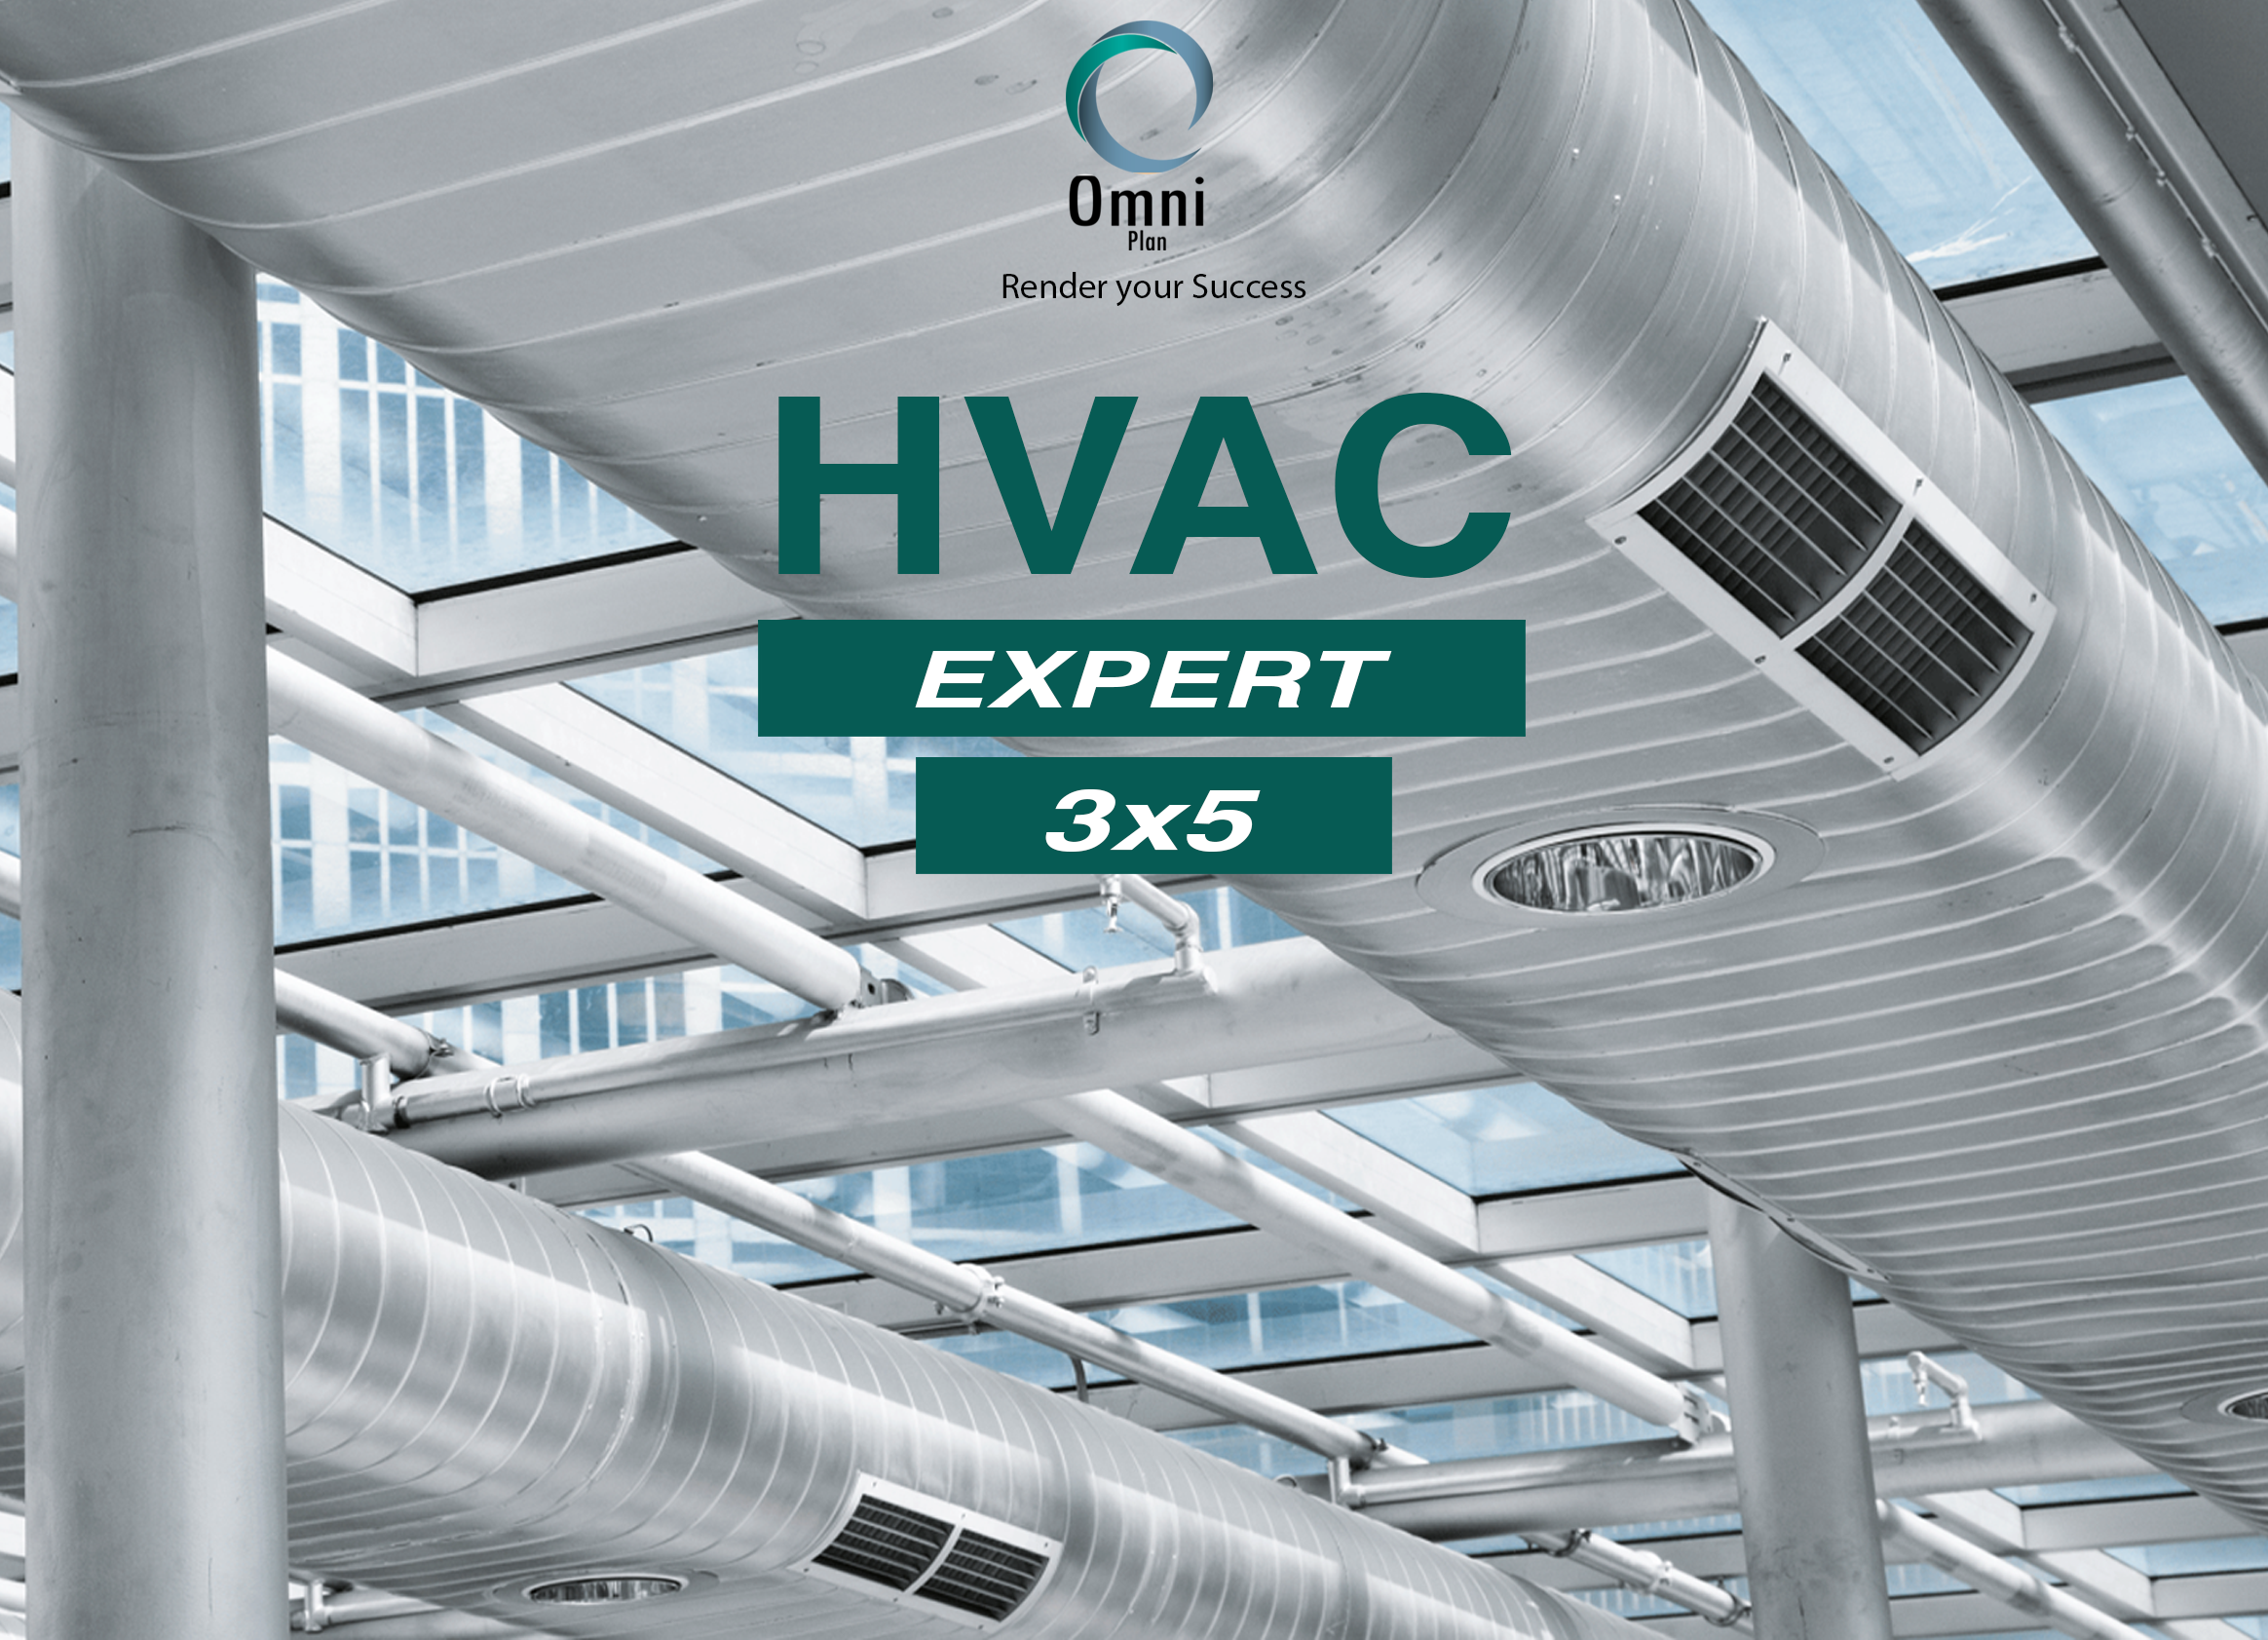 HVAC Expert (3×5)